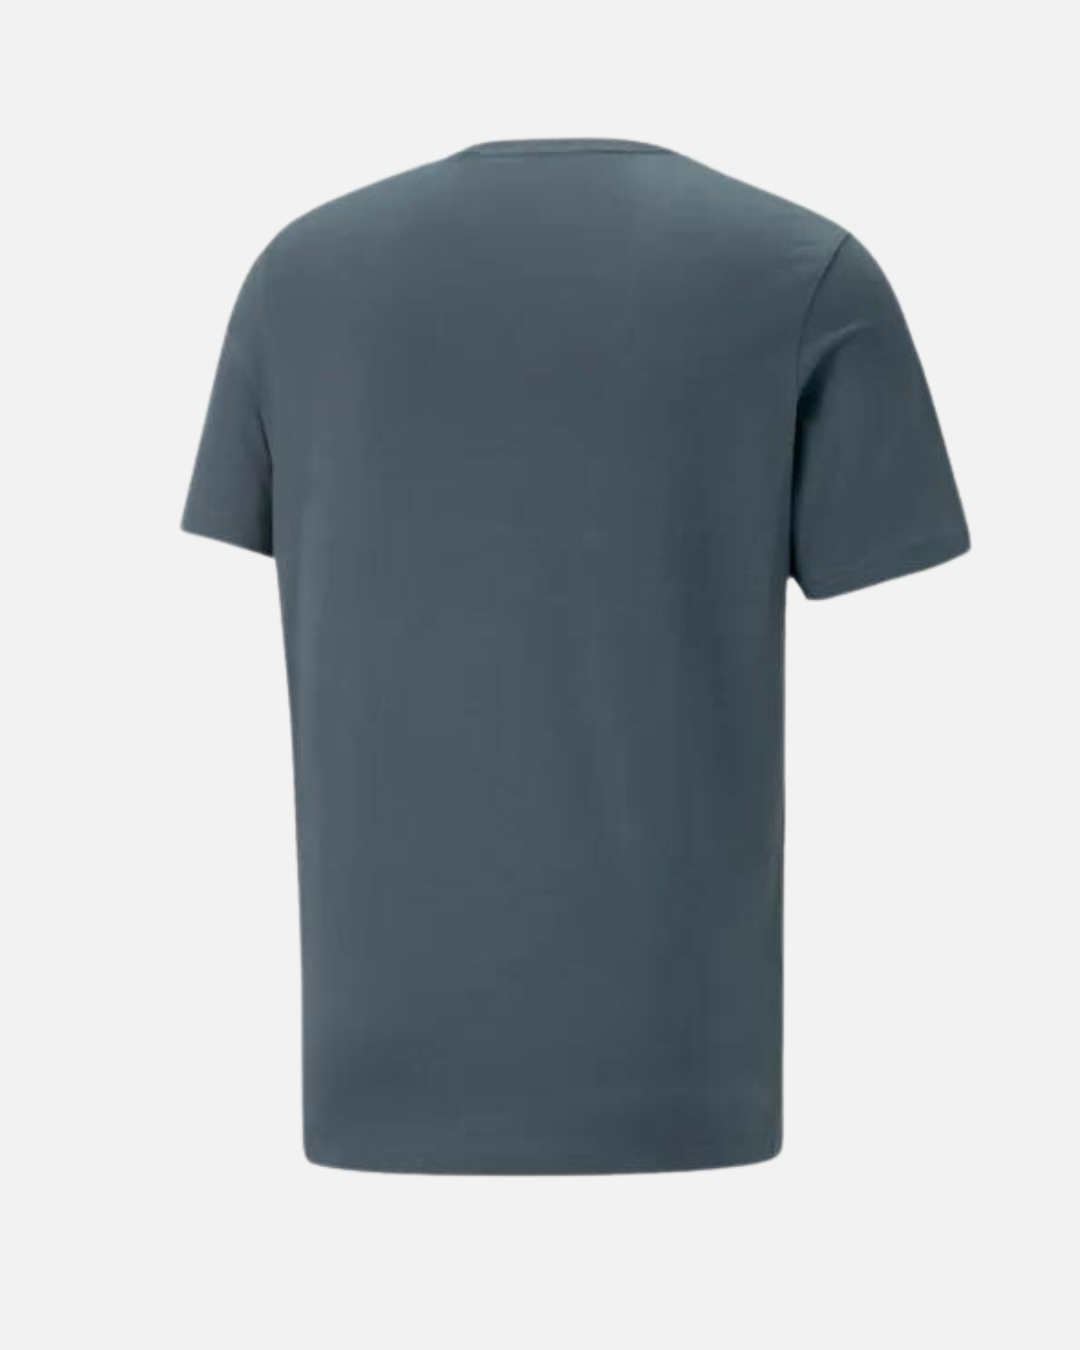 Puma Essentials T-shirt - Blue